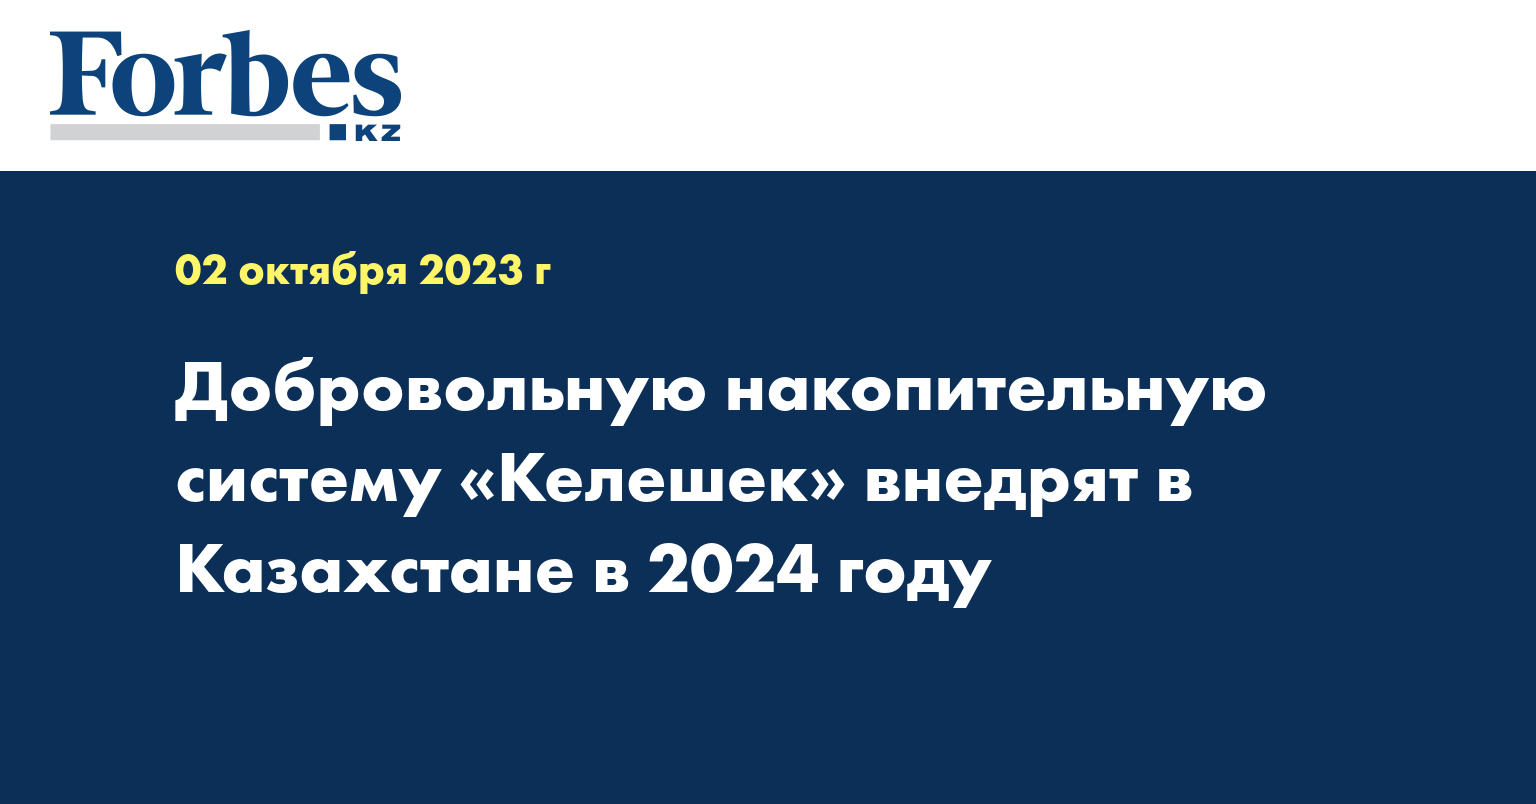 Добровольную накопительную систему «Келешек» внедрят в Казахстане в 2024 году